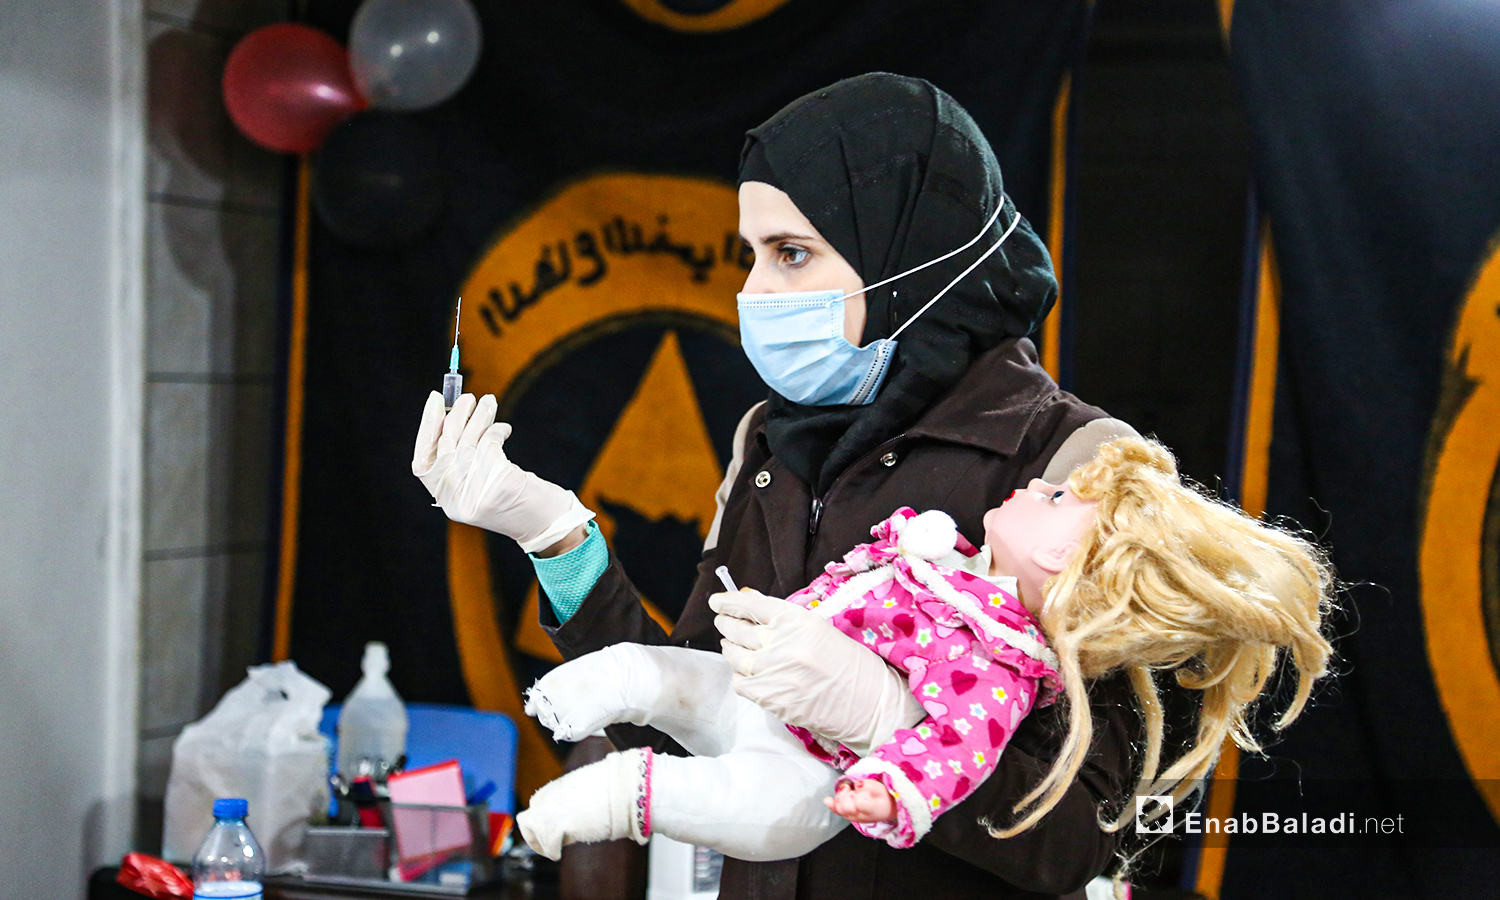 مدربة من الدفاع المدني تشرح للمتدرات حول الإبر الطبية - أرمناز شمال إدلب 7 آذار (عنب بلدي / يوسف غريبي)